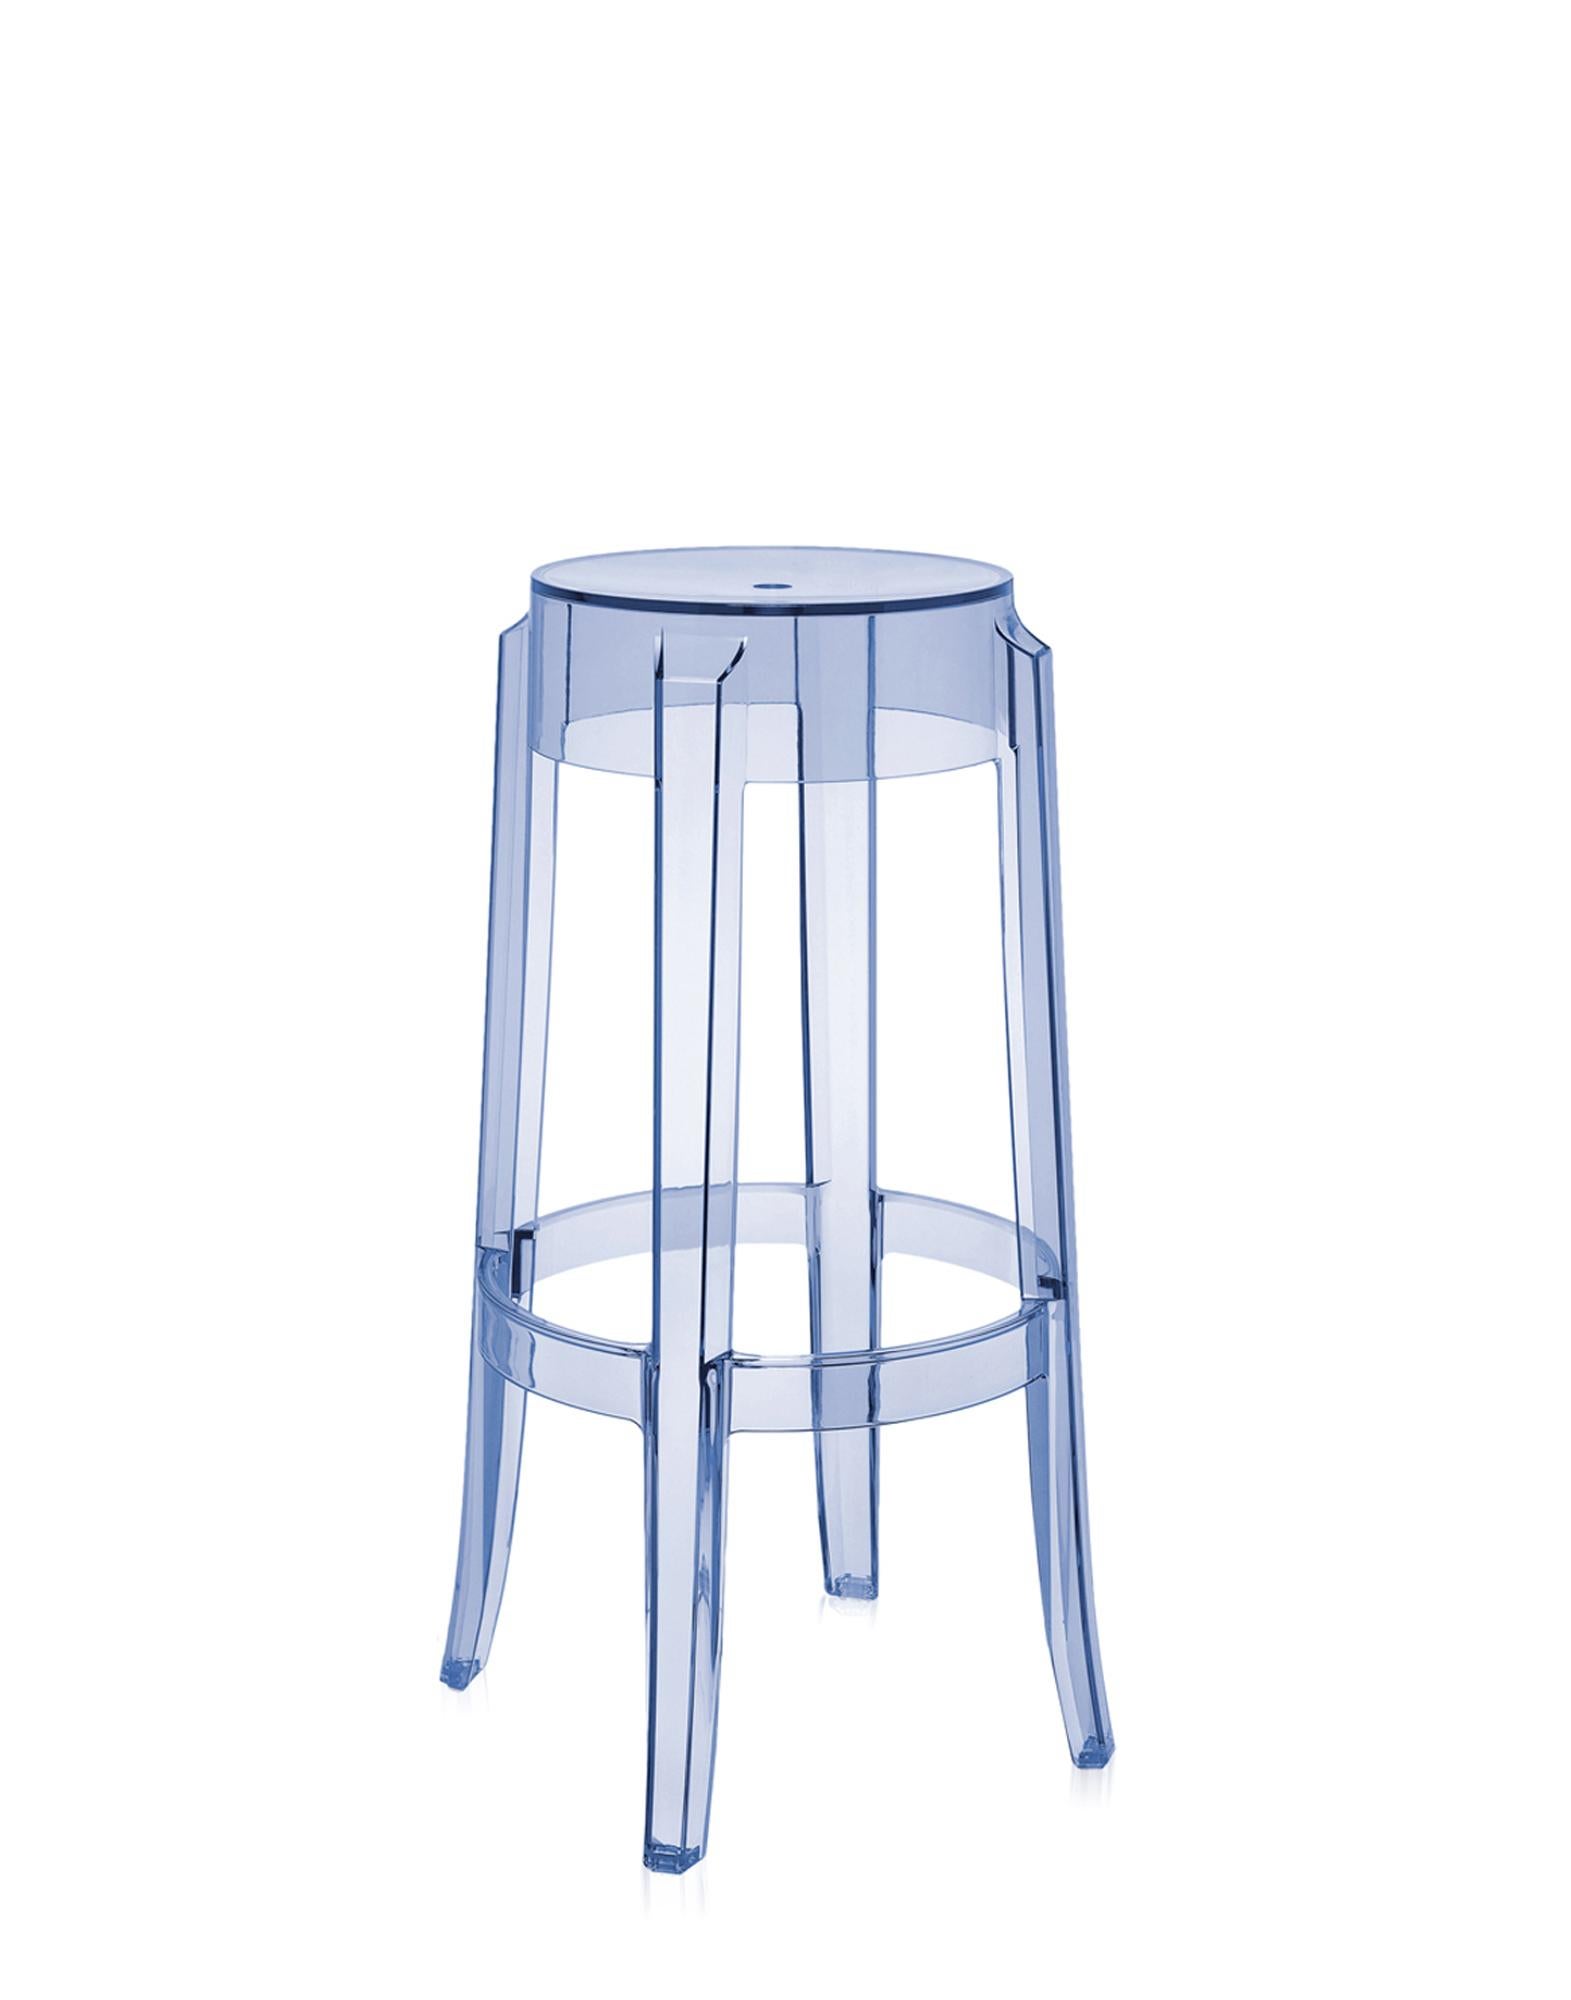 acrylic stools ikea